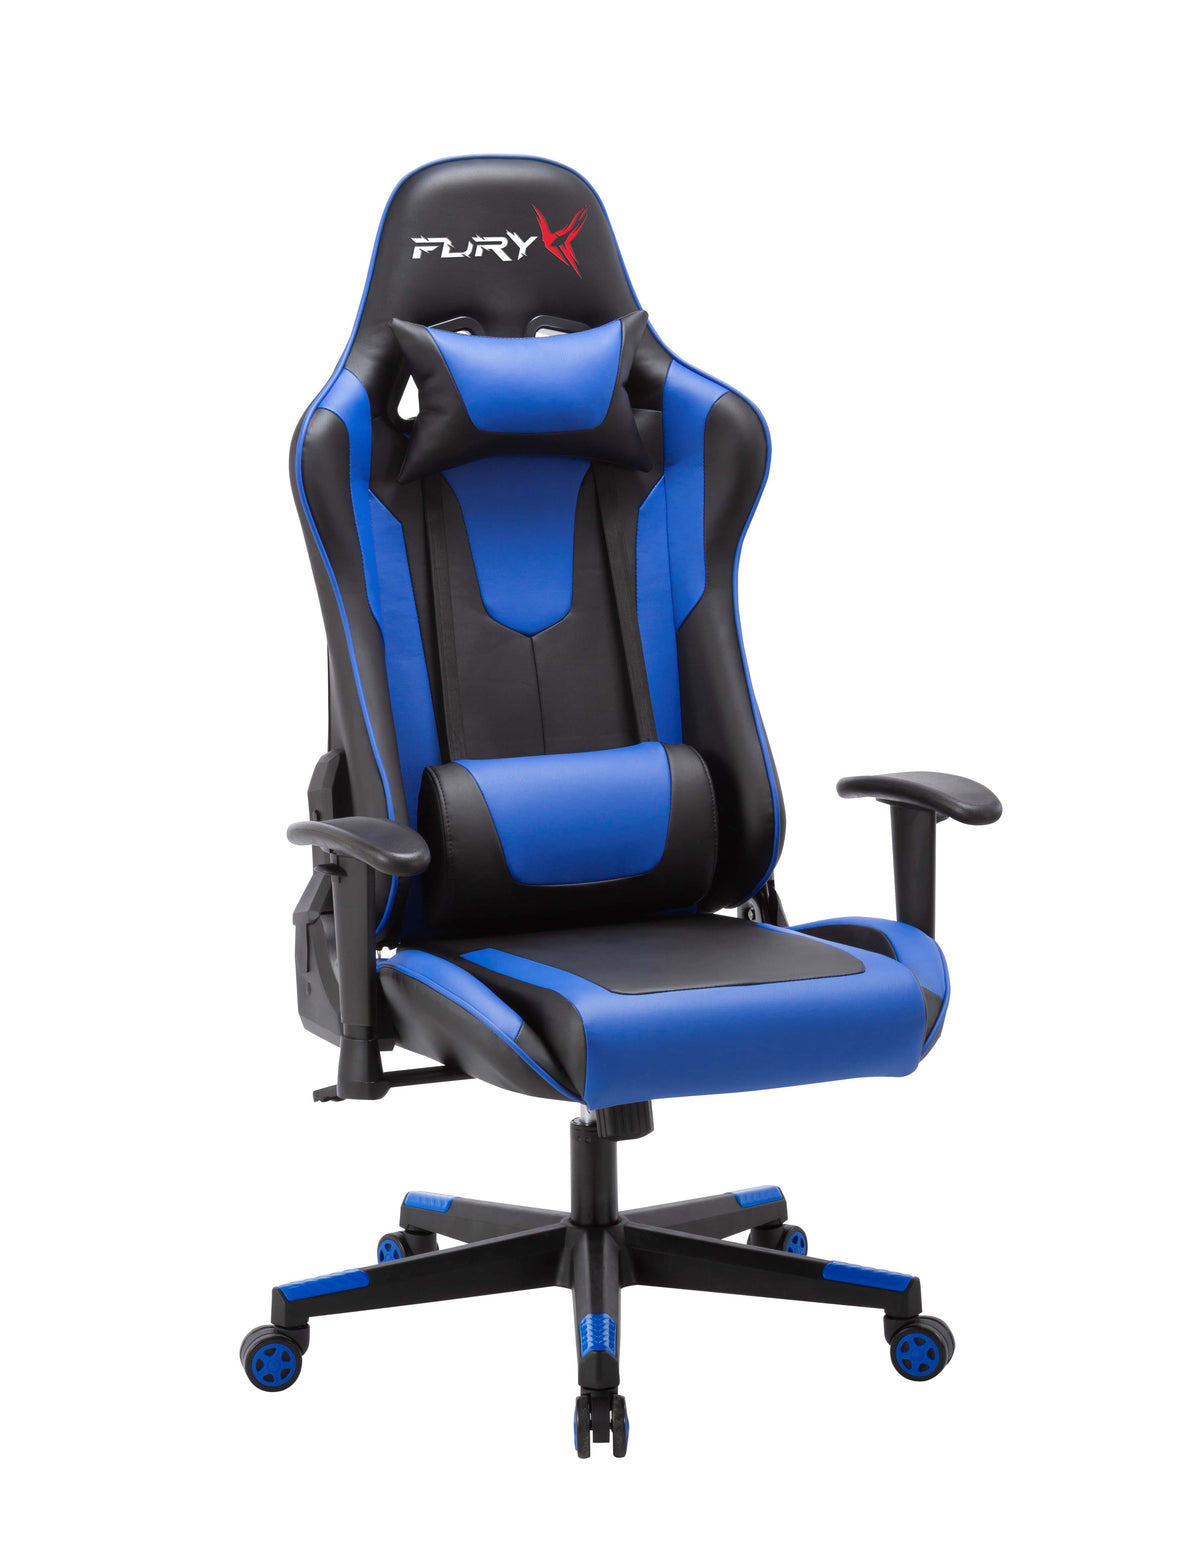 FuryX Gaming Chair In Blue & Black - Notbrand